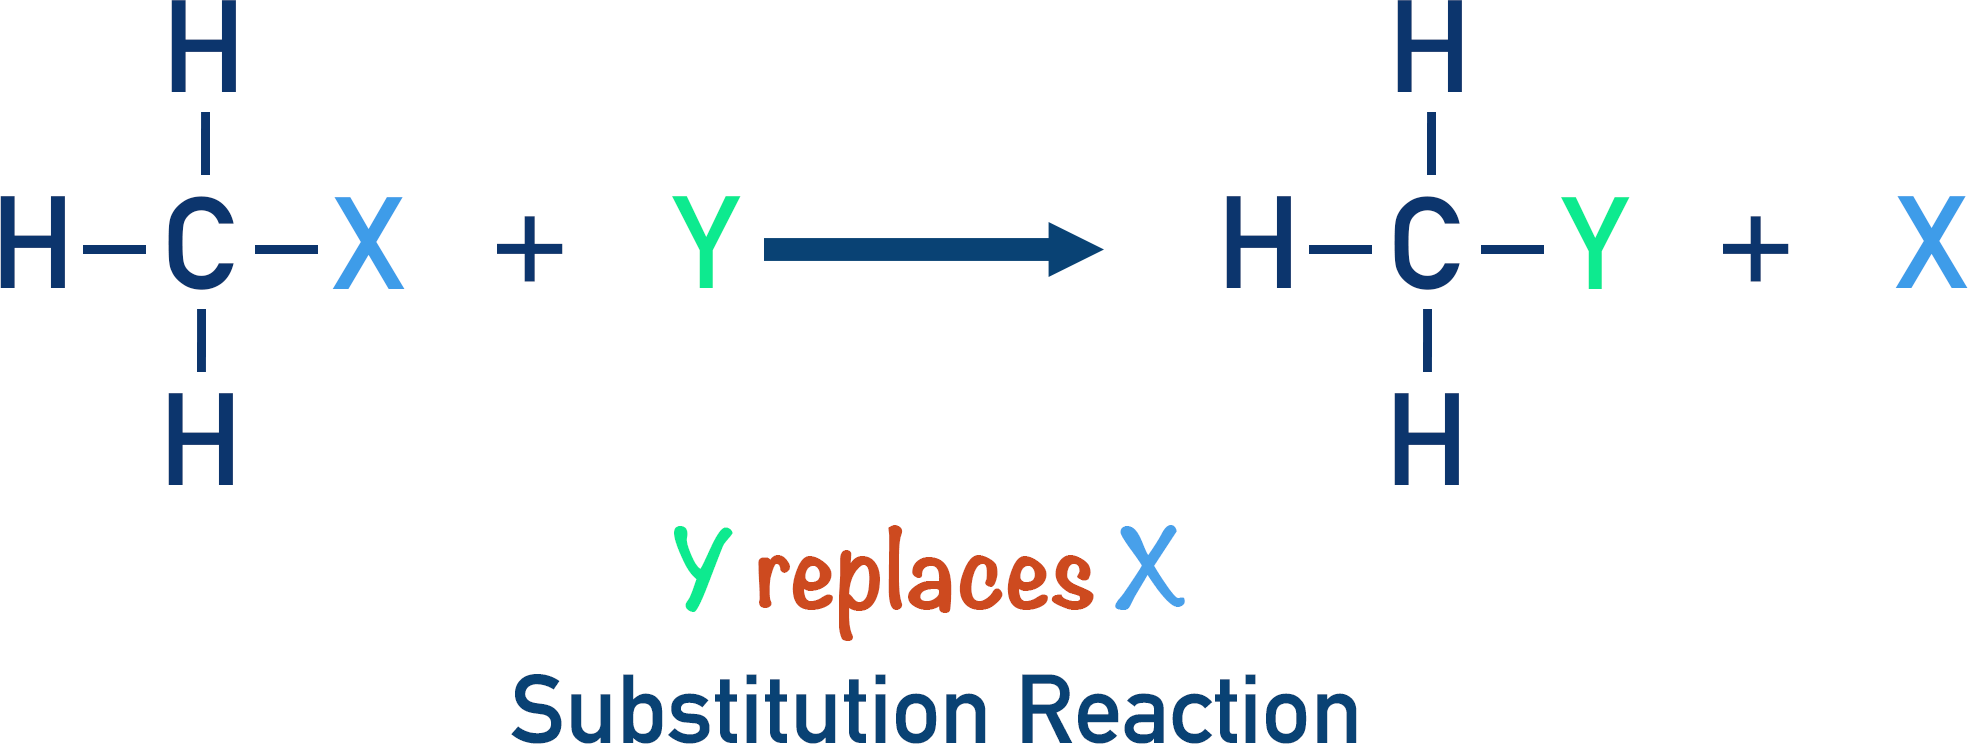 substitution reaction halogenoalkane